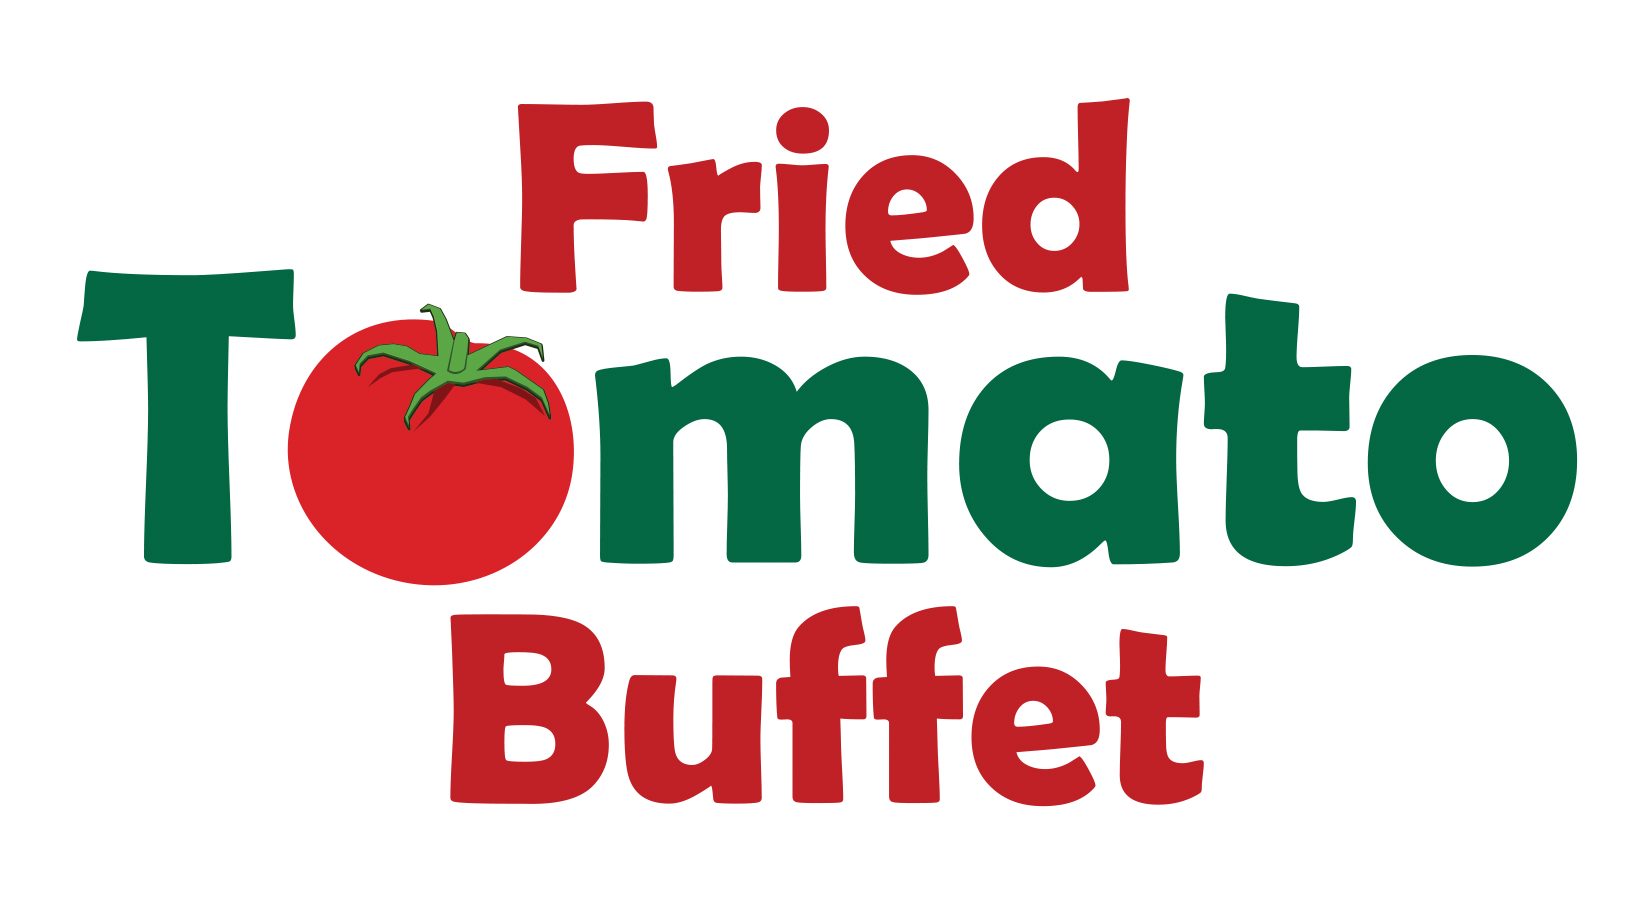 Fried Tomato Buffet